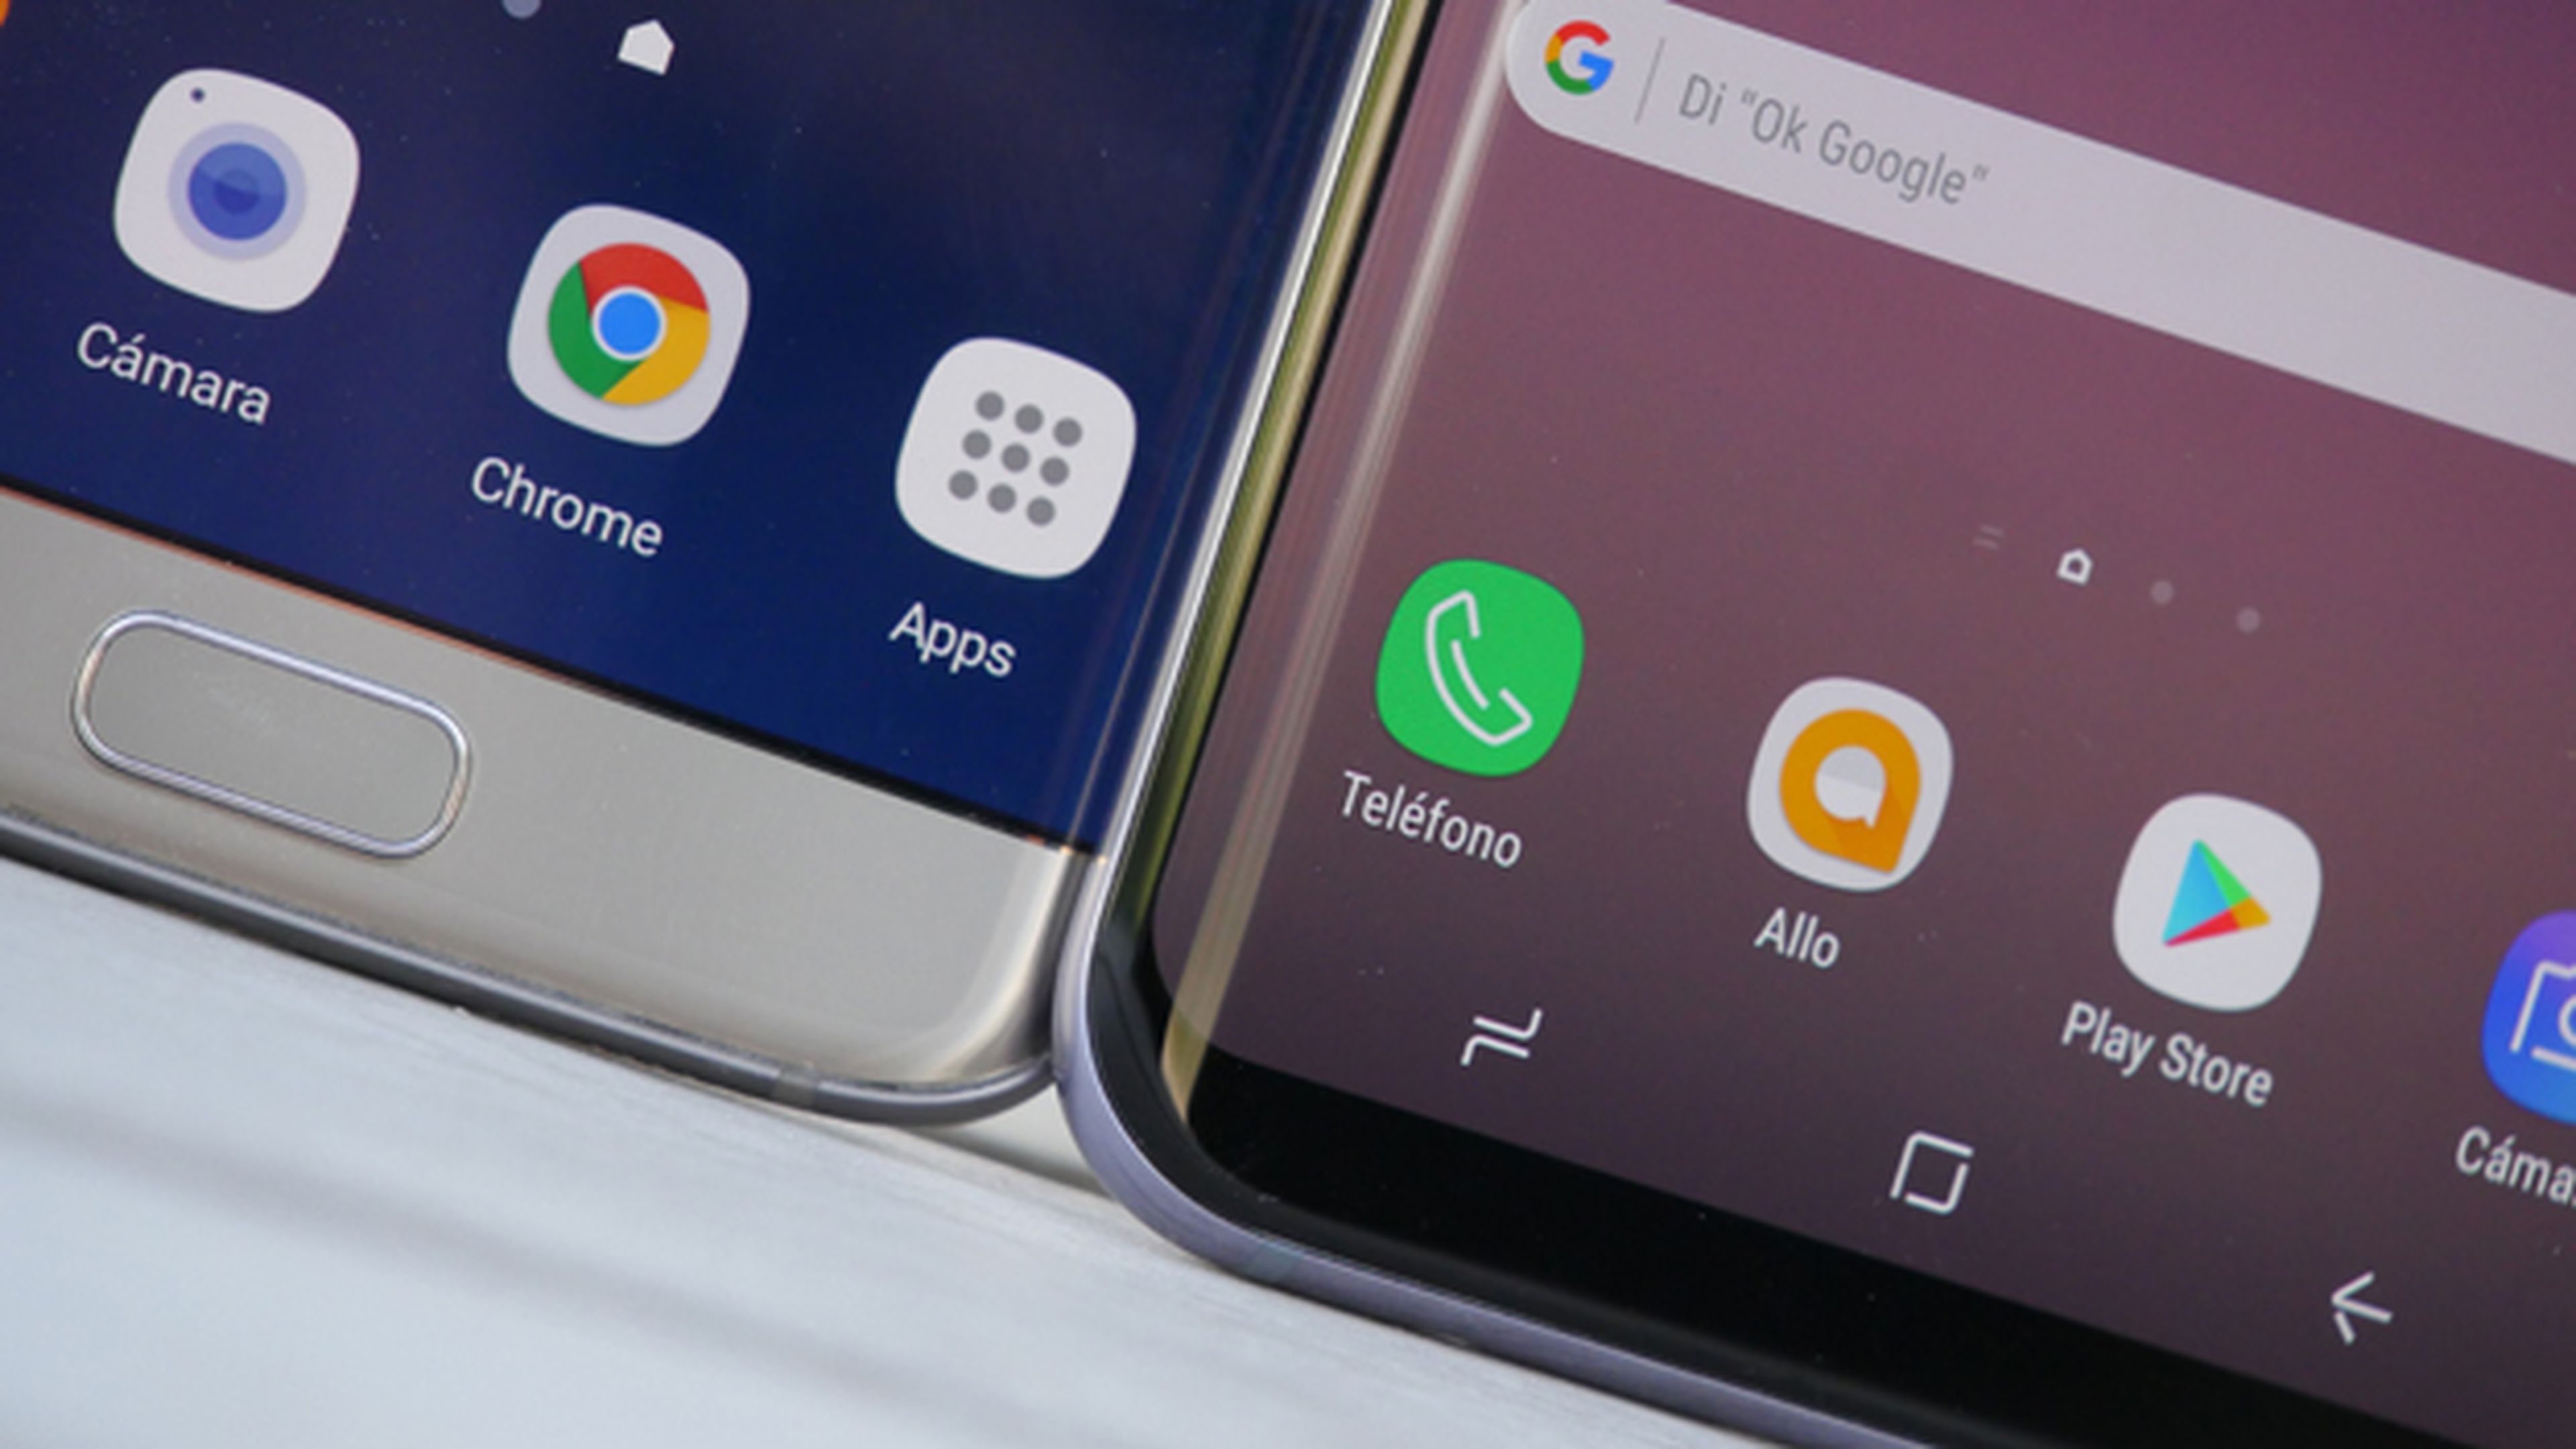 ¿Qué novedades hay en la pantalla del Samsung Galaxy S8+?